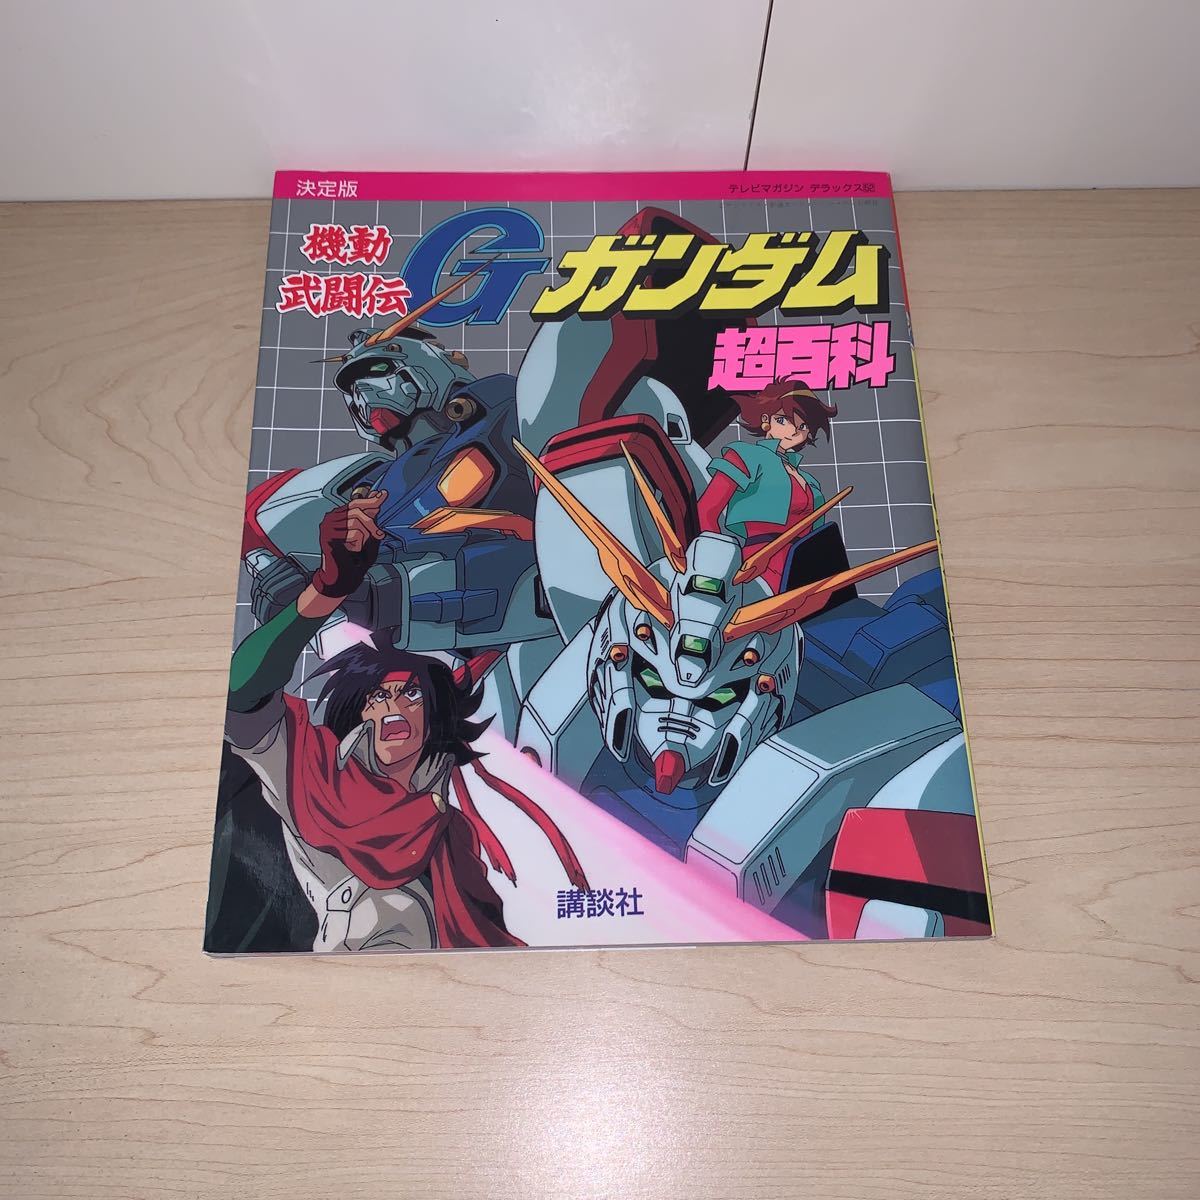 [ редкий первая версия 1994 год 12 месяц 12 день no. 1. выпуск ] телевизор журнал Deluxe 52 решение версия Mobile FIghter G Gundam супер различные предметы .. фирма 